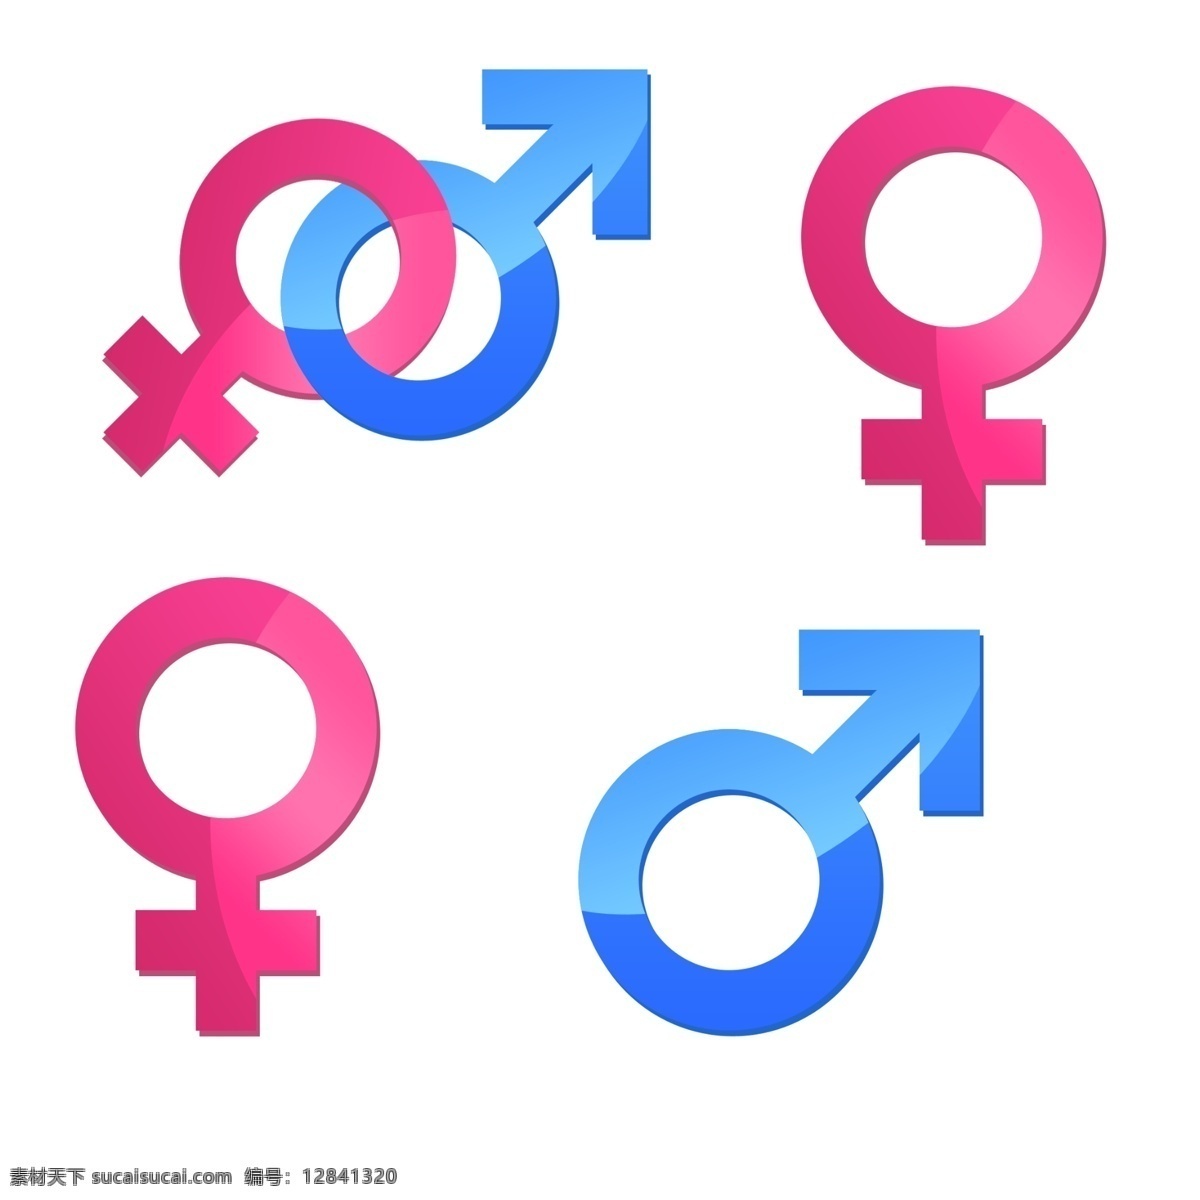 男性 女性 标志 性别 男性女性 抽象立体 psd素材 电子商务 平台 标志图标 公共标识标志 白色